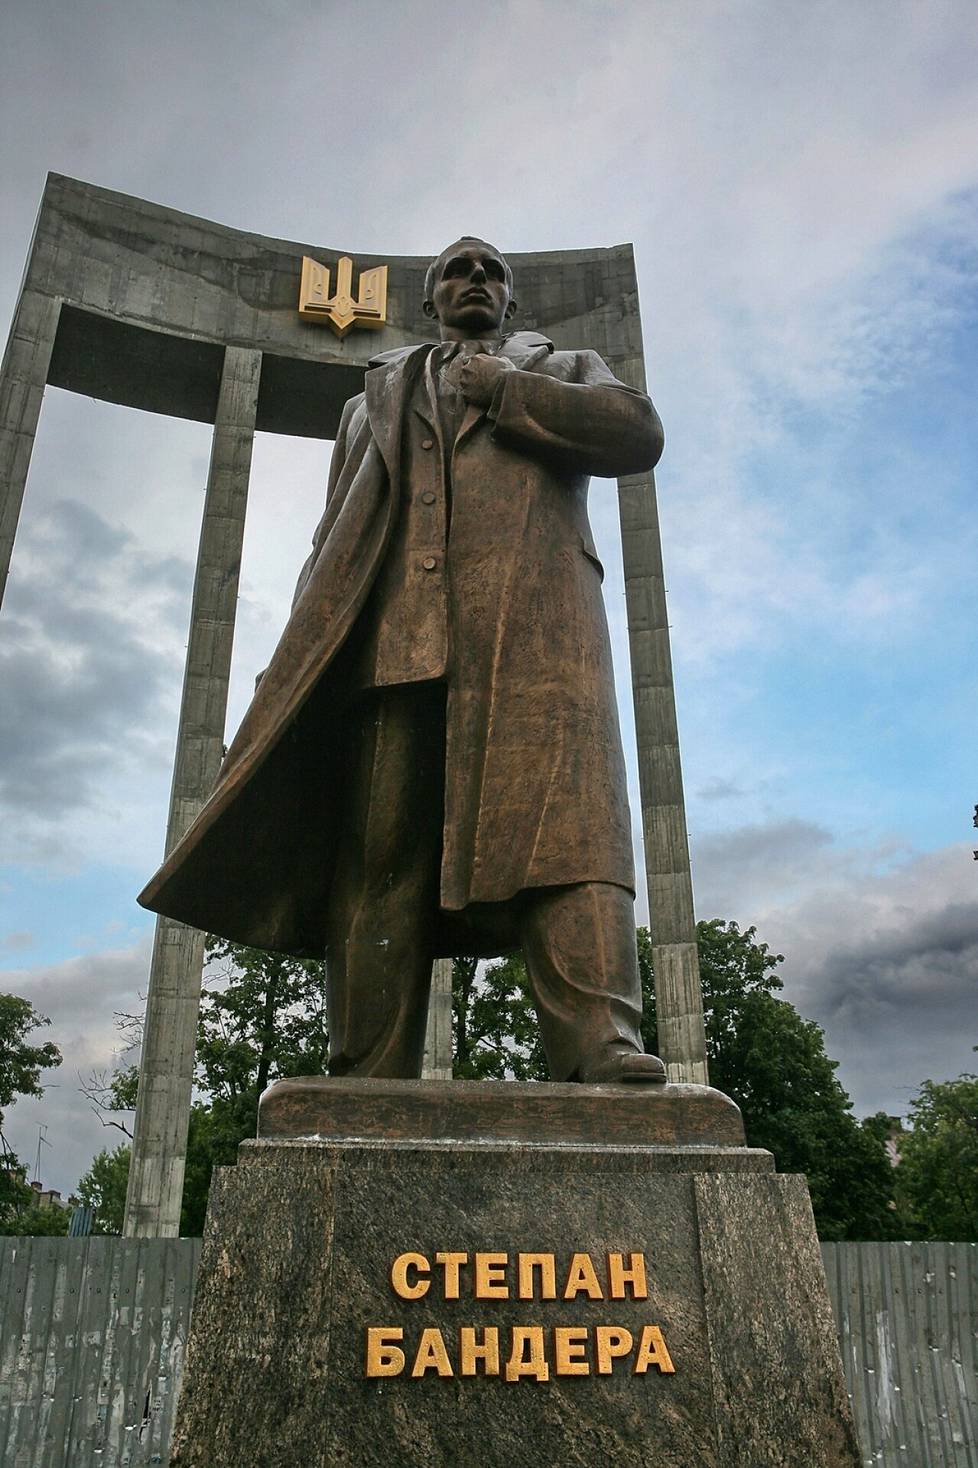 Lvivissä on Stepan Banderaa kunnioittava muistomerkki. Kuva on vuodelta 2009.